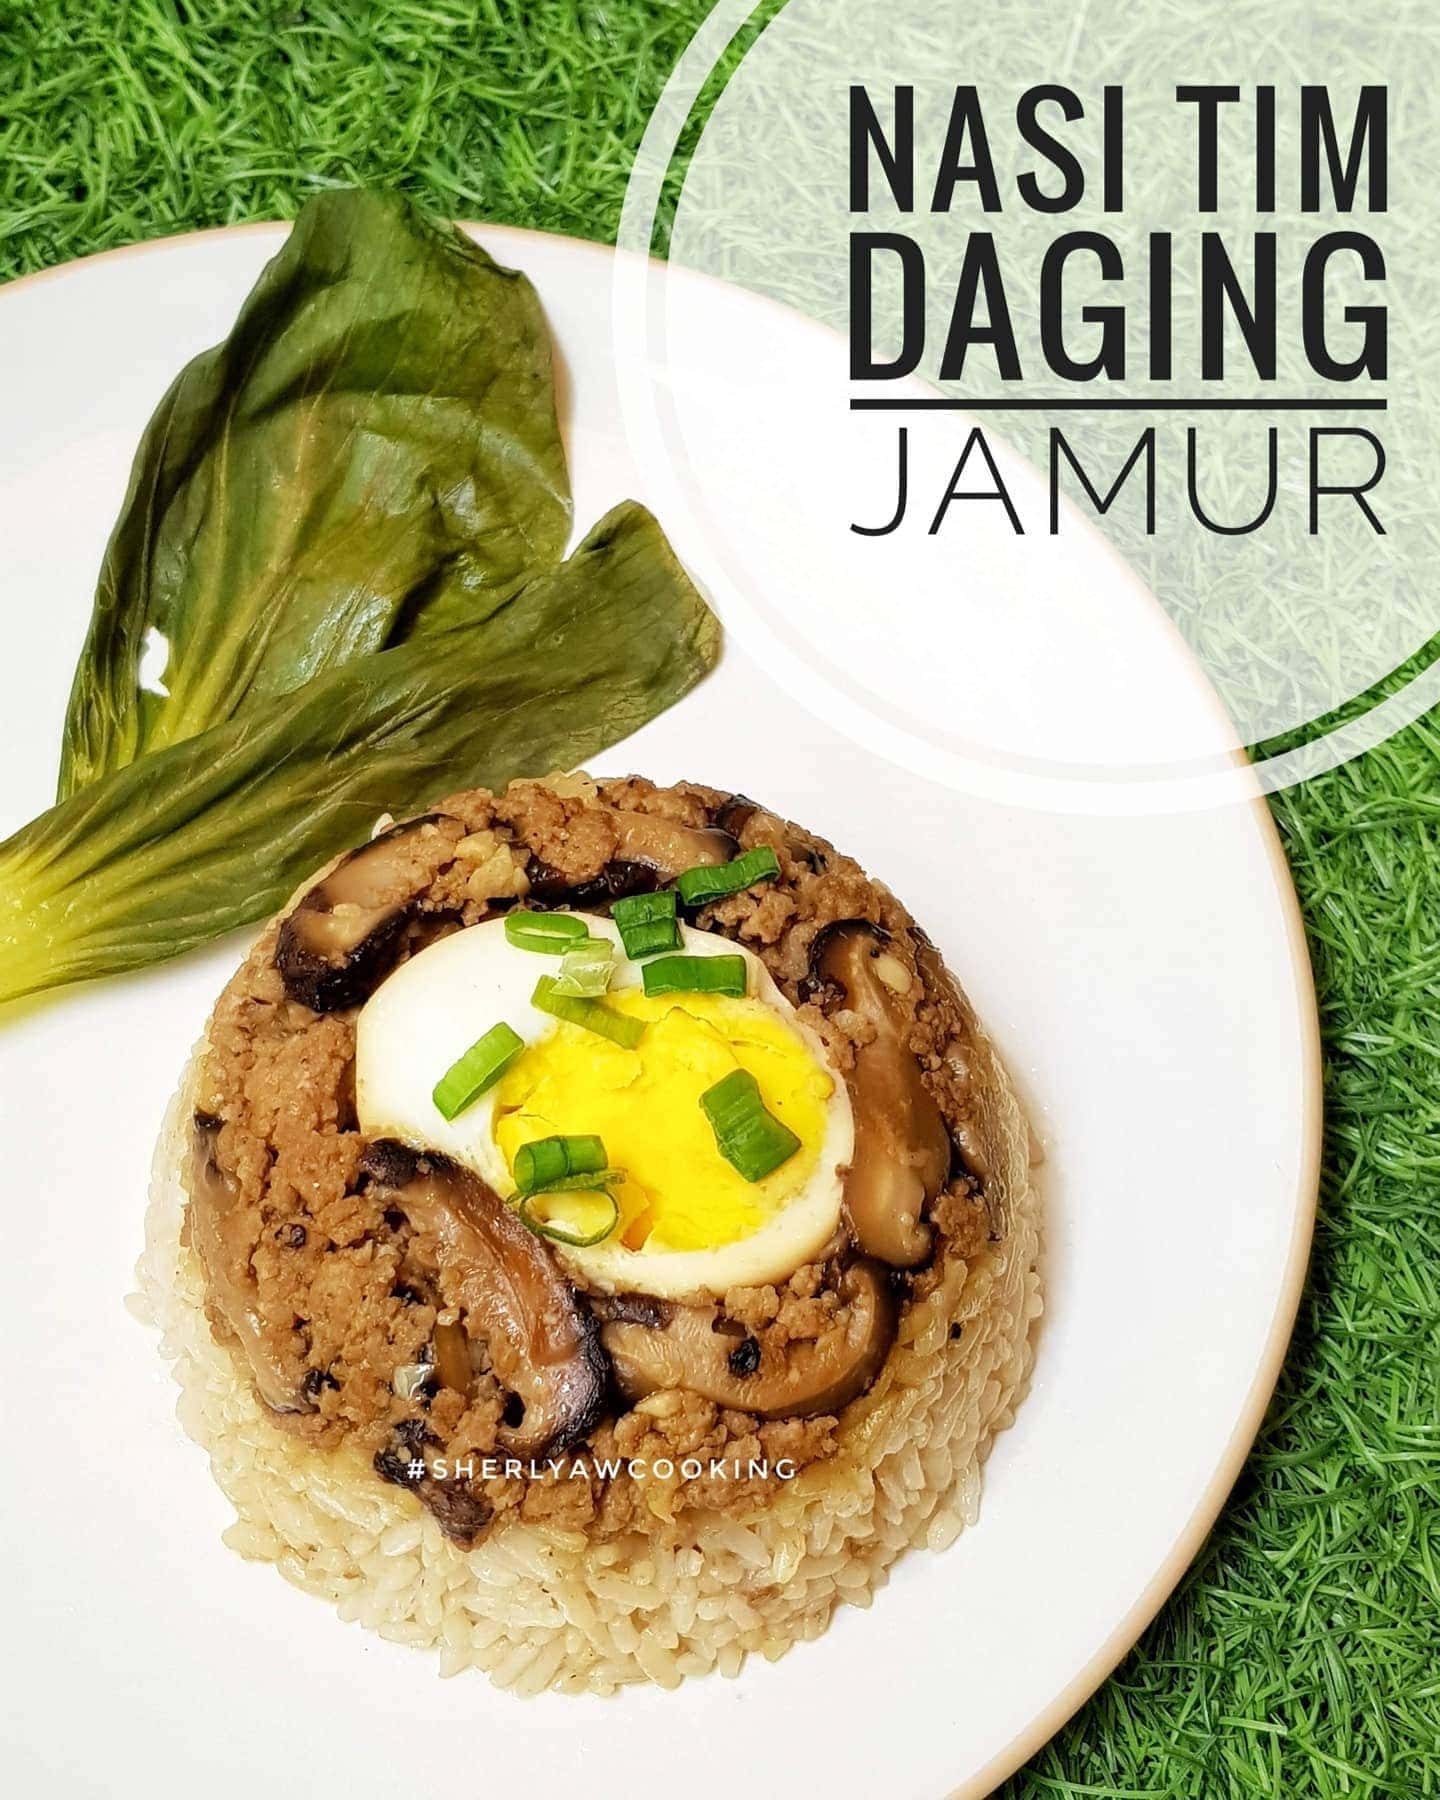 Nasi Tim Daging Jamu by Sherly AW